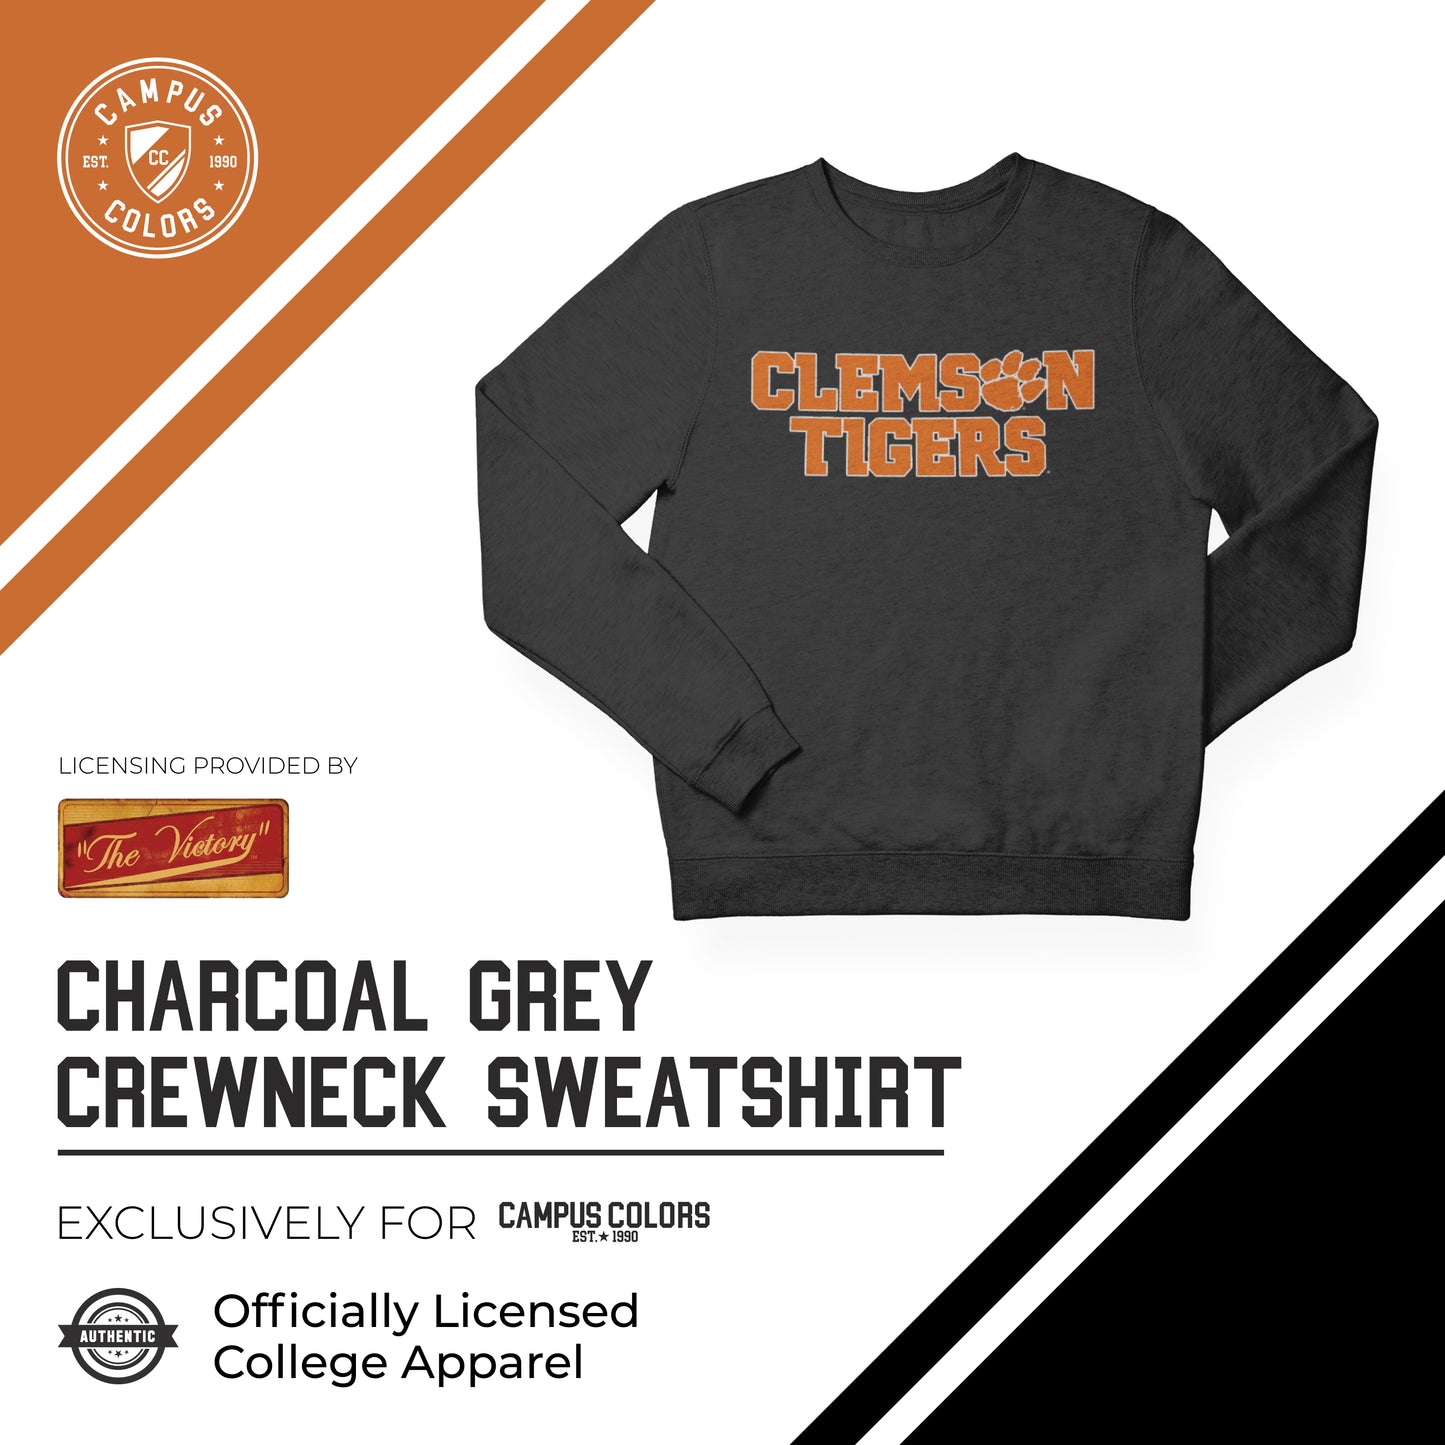 Clemson Tigers NCAA Adult Charcoal Crewneck Fleece Sweatshirt - Charcoal